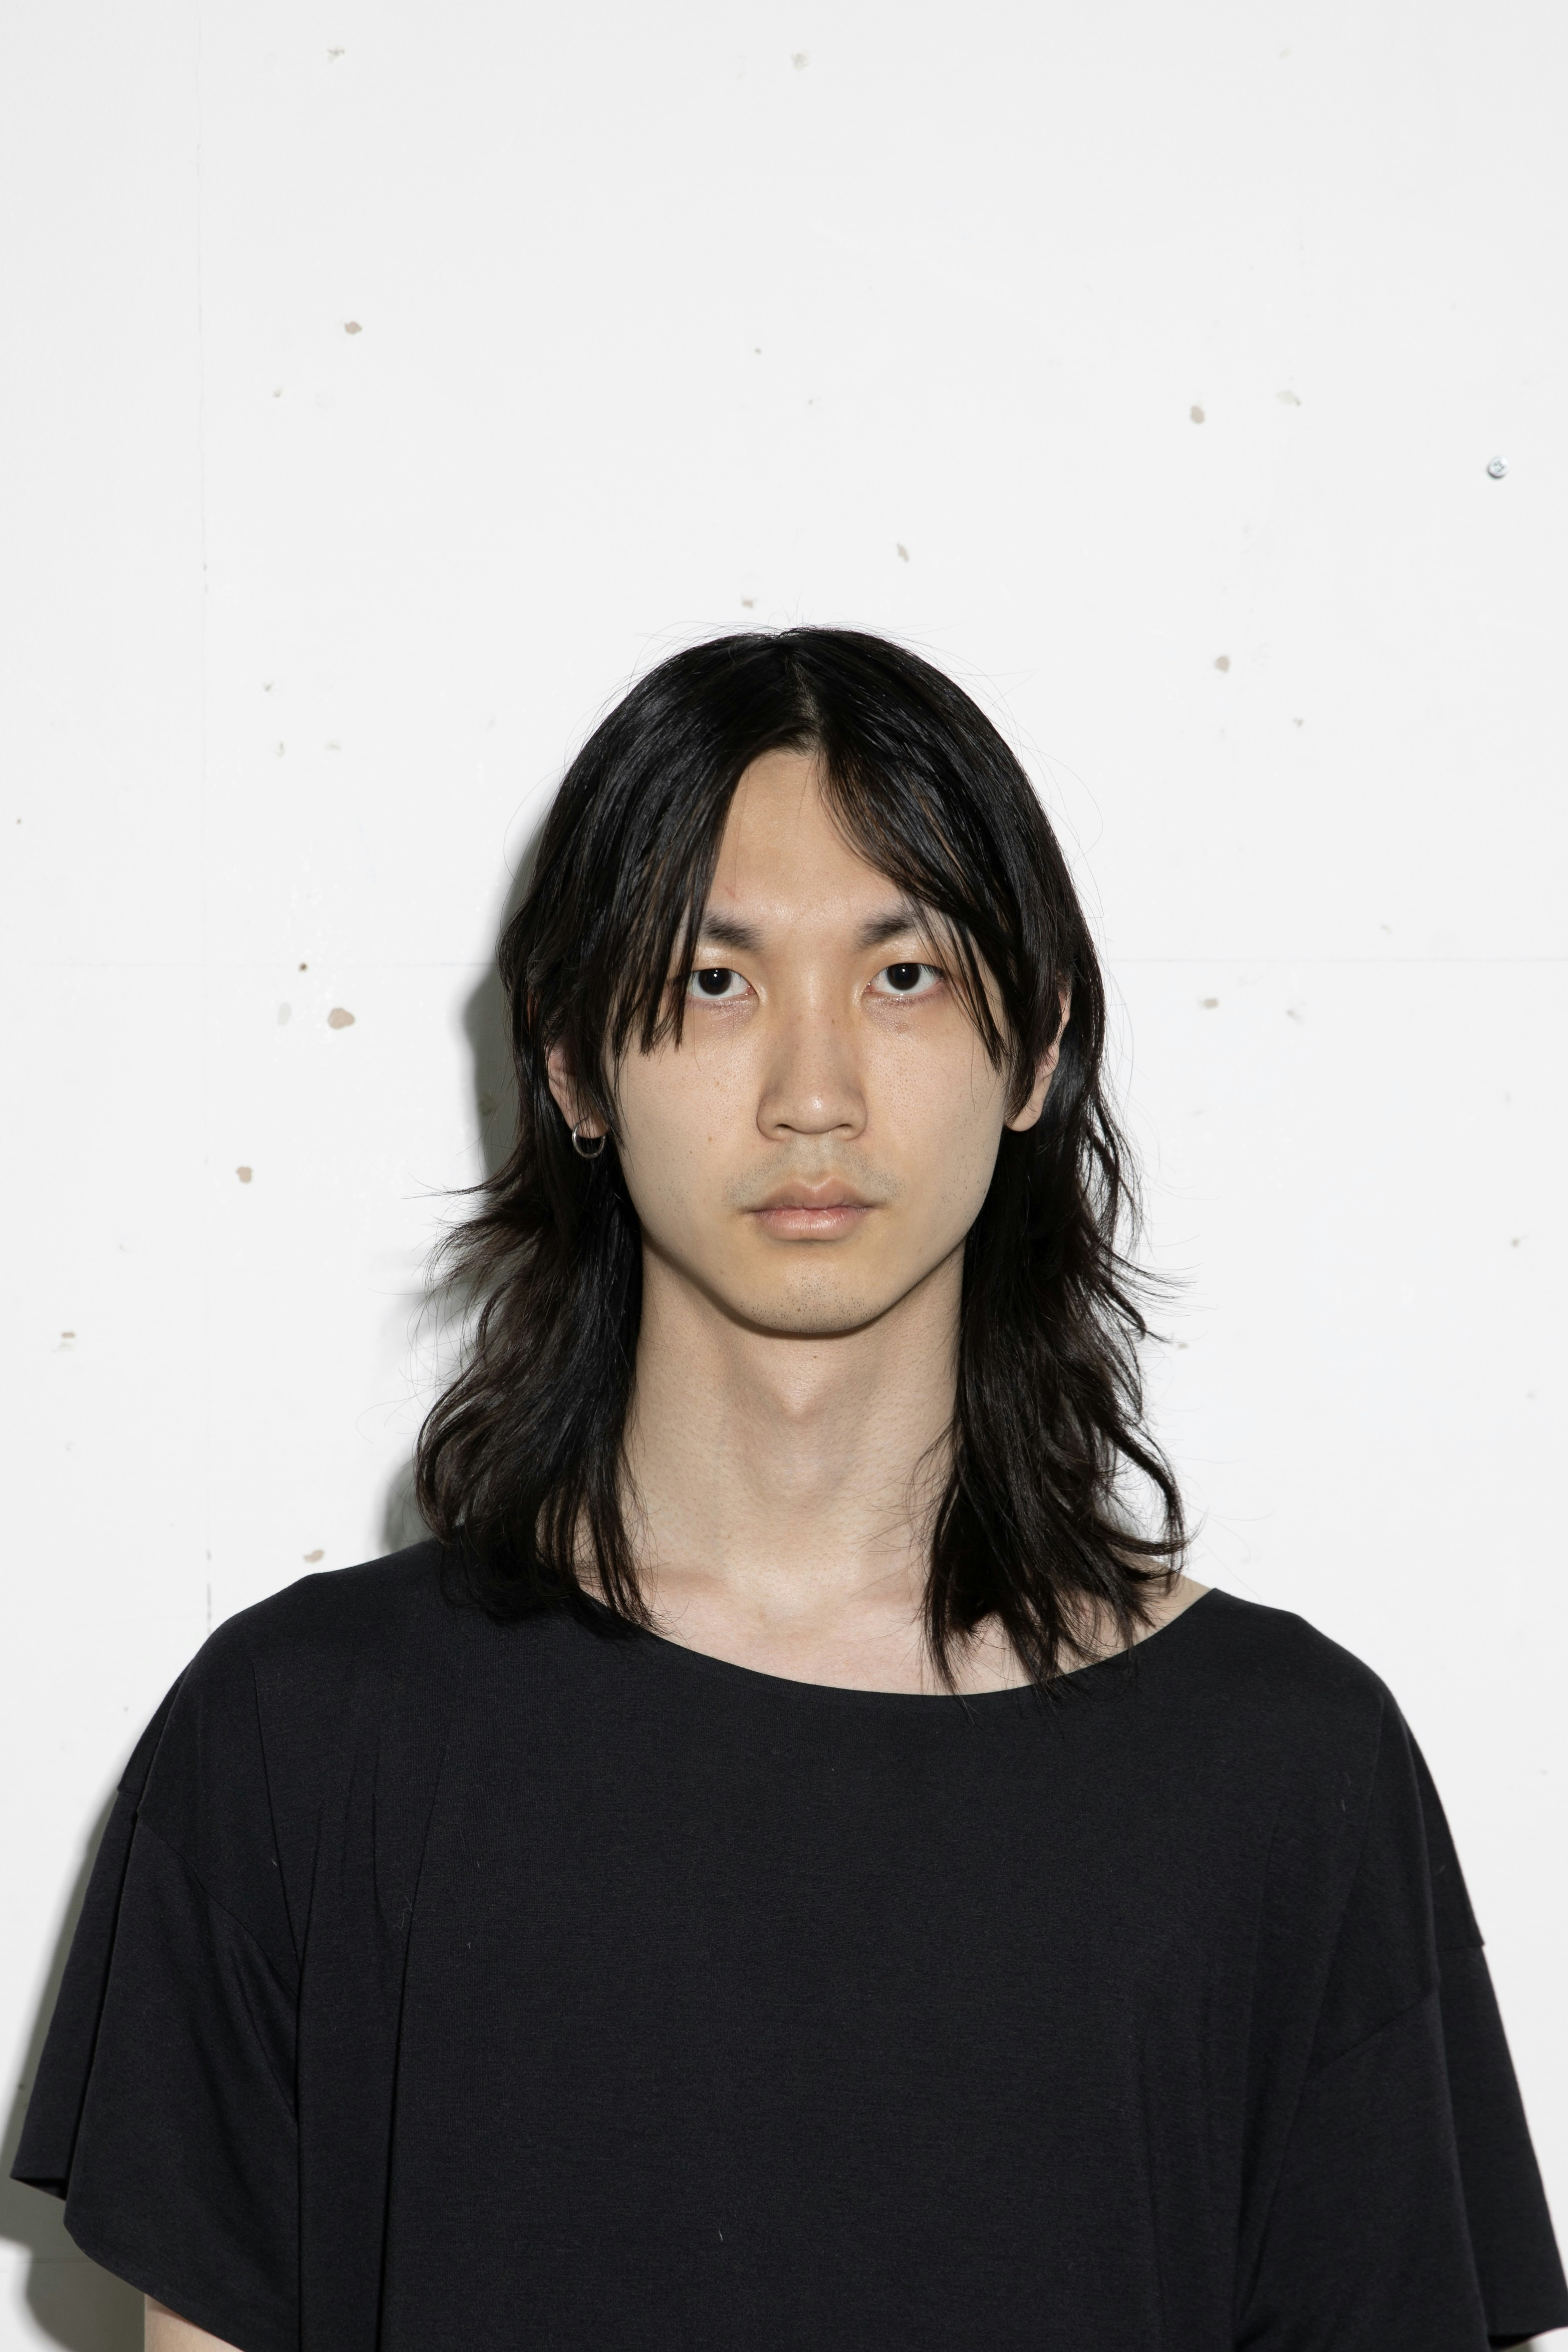 An image of Isaac Wang